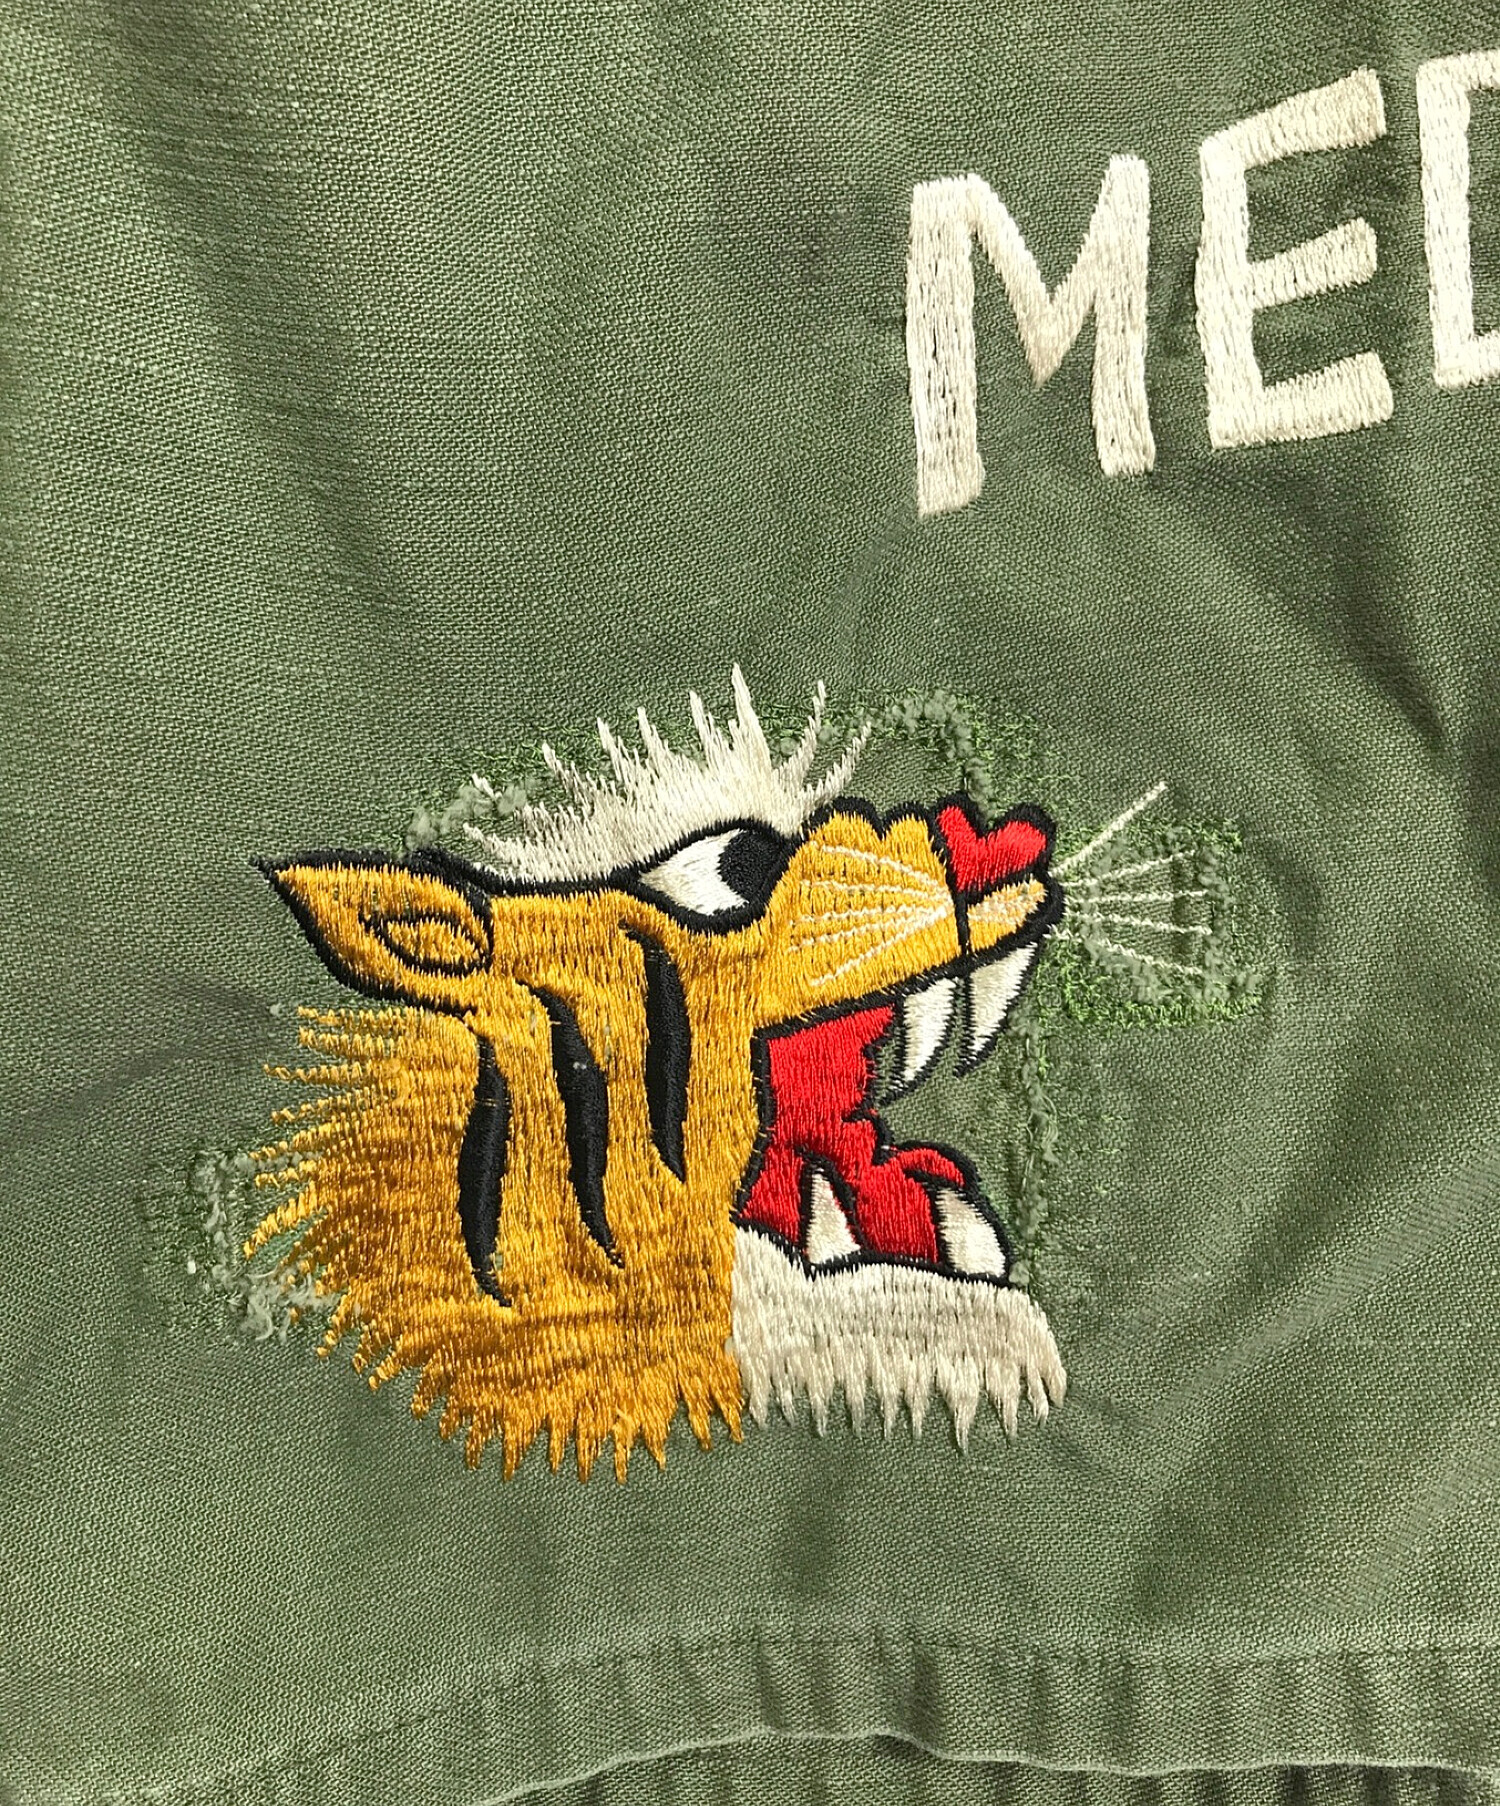 US ARMY (ユーエス アーミー) 60s ベトジャン刺繍 ヴィンテージ ユーティリティシャツ オリーブ サイズ:15 1/2×31